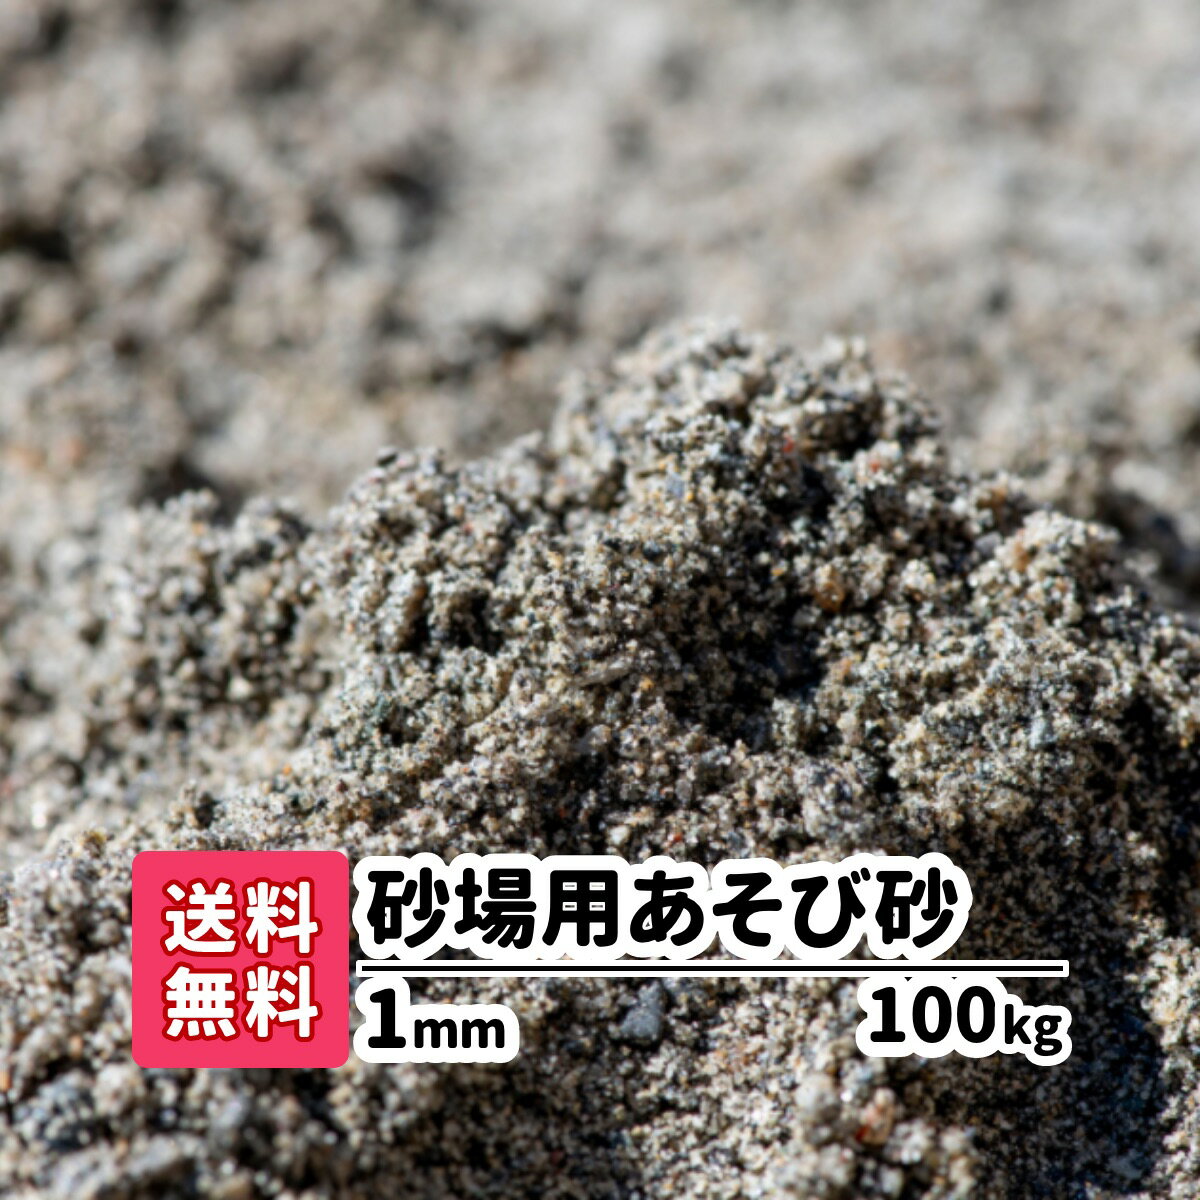 商品の詳細 【砂場用遊び砂】 1mm 100kg サイズ 約1mm 重量/容量 100kg（20kg×5） 商品説明 ザクザクッとしっかりと手触りです。 安心の放射線測定済み♪ お団子や砂山作りに最適です。 静岡県産 注意事項 ※砂場用遊び砂で遊んだ後は、お子様に手洗いうがいをさせて下さい。 ※乾燥砂ではないので湿っている場合があります。 キーワード 砂・チャイルドサンド・砂遊び・すなあそび・砂あそび・砂場・すなば・庭・砂場遊び・子ども・こども・キッズ・庭・屋外・屋外・園庭・こども園・保育所・小学校・室内・室内用お砂遊び・水はけ・泥んこ遊び・どろんこ・どろんこ遊び・泥だんご・知育玩具・放射線測定済・国産・天然砂・放射線量検査【砂場用遊び砂】 &#9654; 10kgを購入 &#9654; 20kgを購入 &#9654; 40kgを購入 &#9654; 60kgを購入 &#9654; 80kgを購入 &#9654; 100kgを購入 &#9654; 200kgを購入 &#9654; 300kgを購入 &#9654; 400kgを購入 &#9654; 500kgを購入 &#9654; 1,000kgを購入